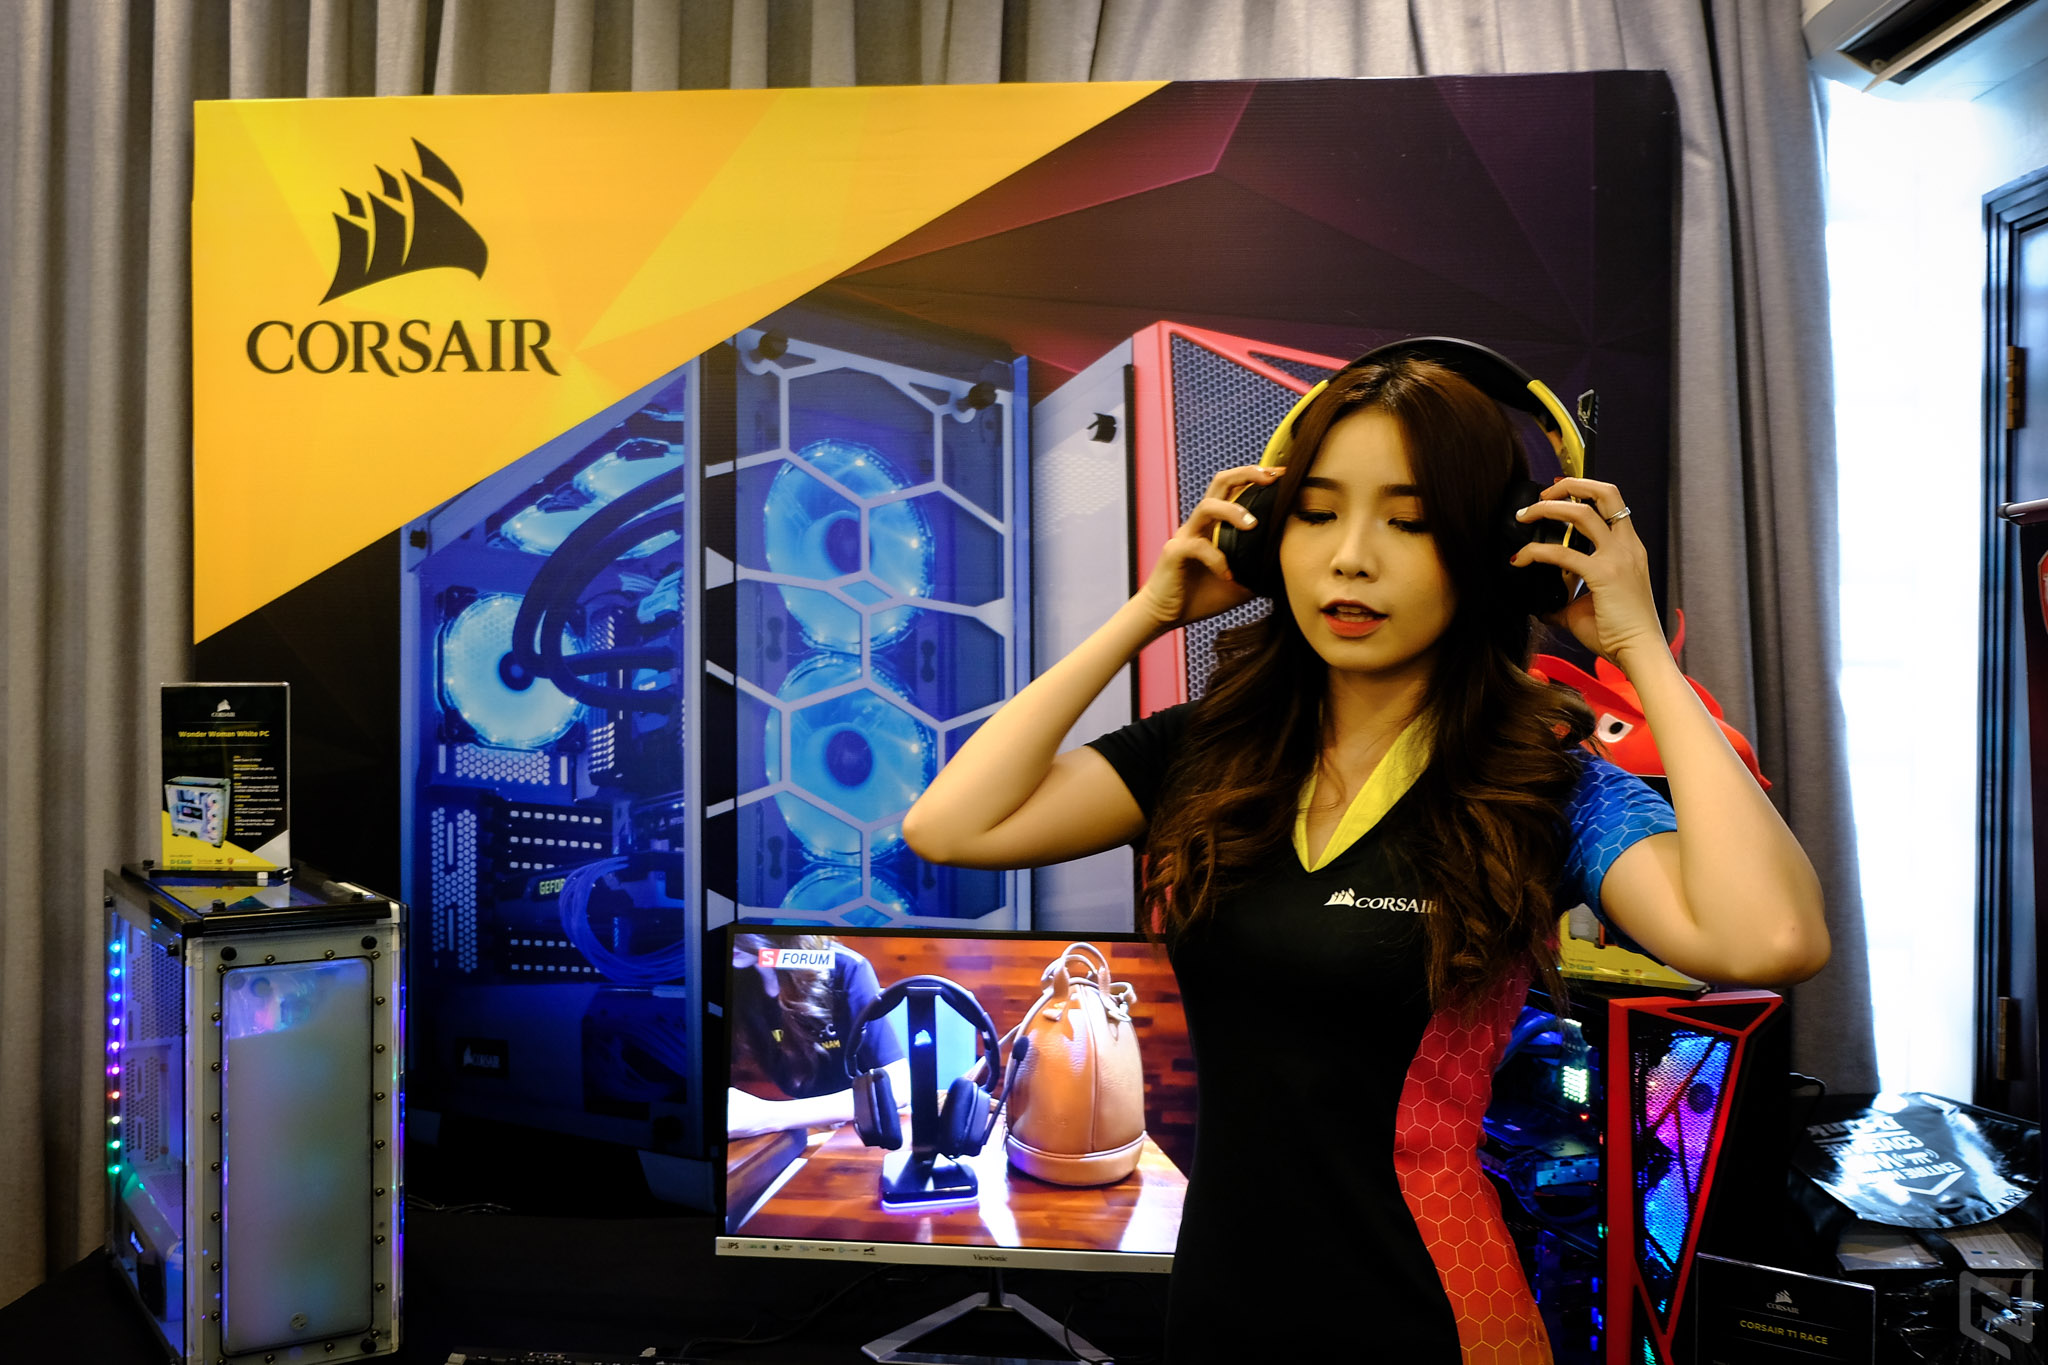 Corsair ra mắt hàng loạt sản phẩm mới dành cho game thủ tại Việt Nam, chủ đề BUILD IT BEAUTIFUL